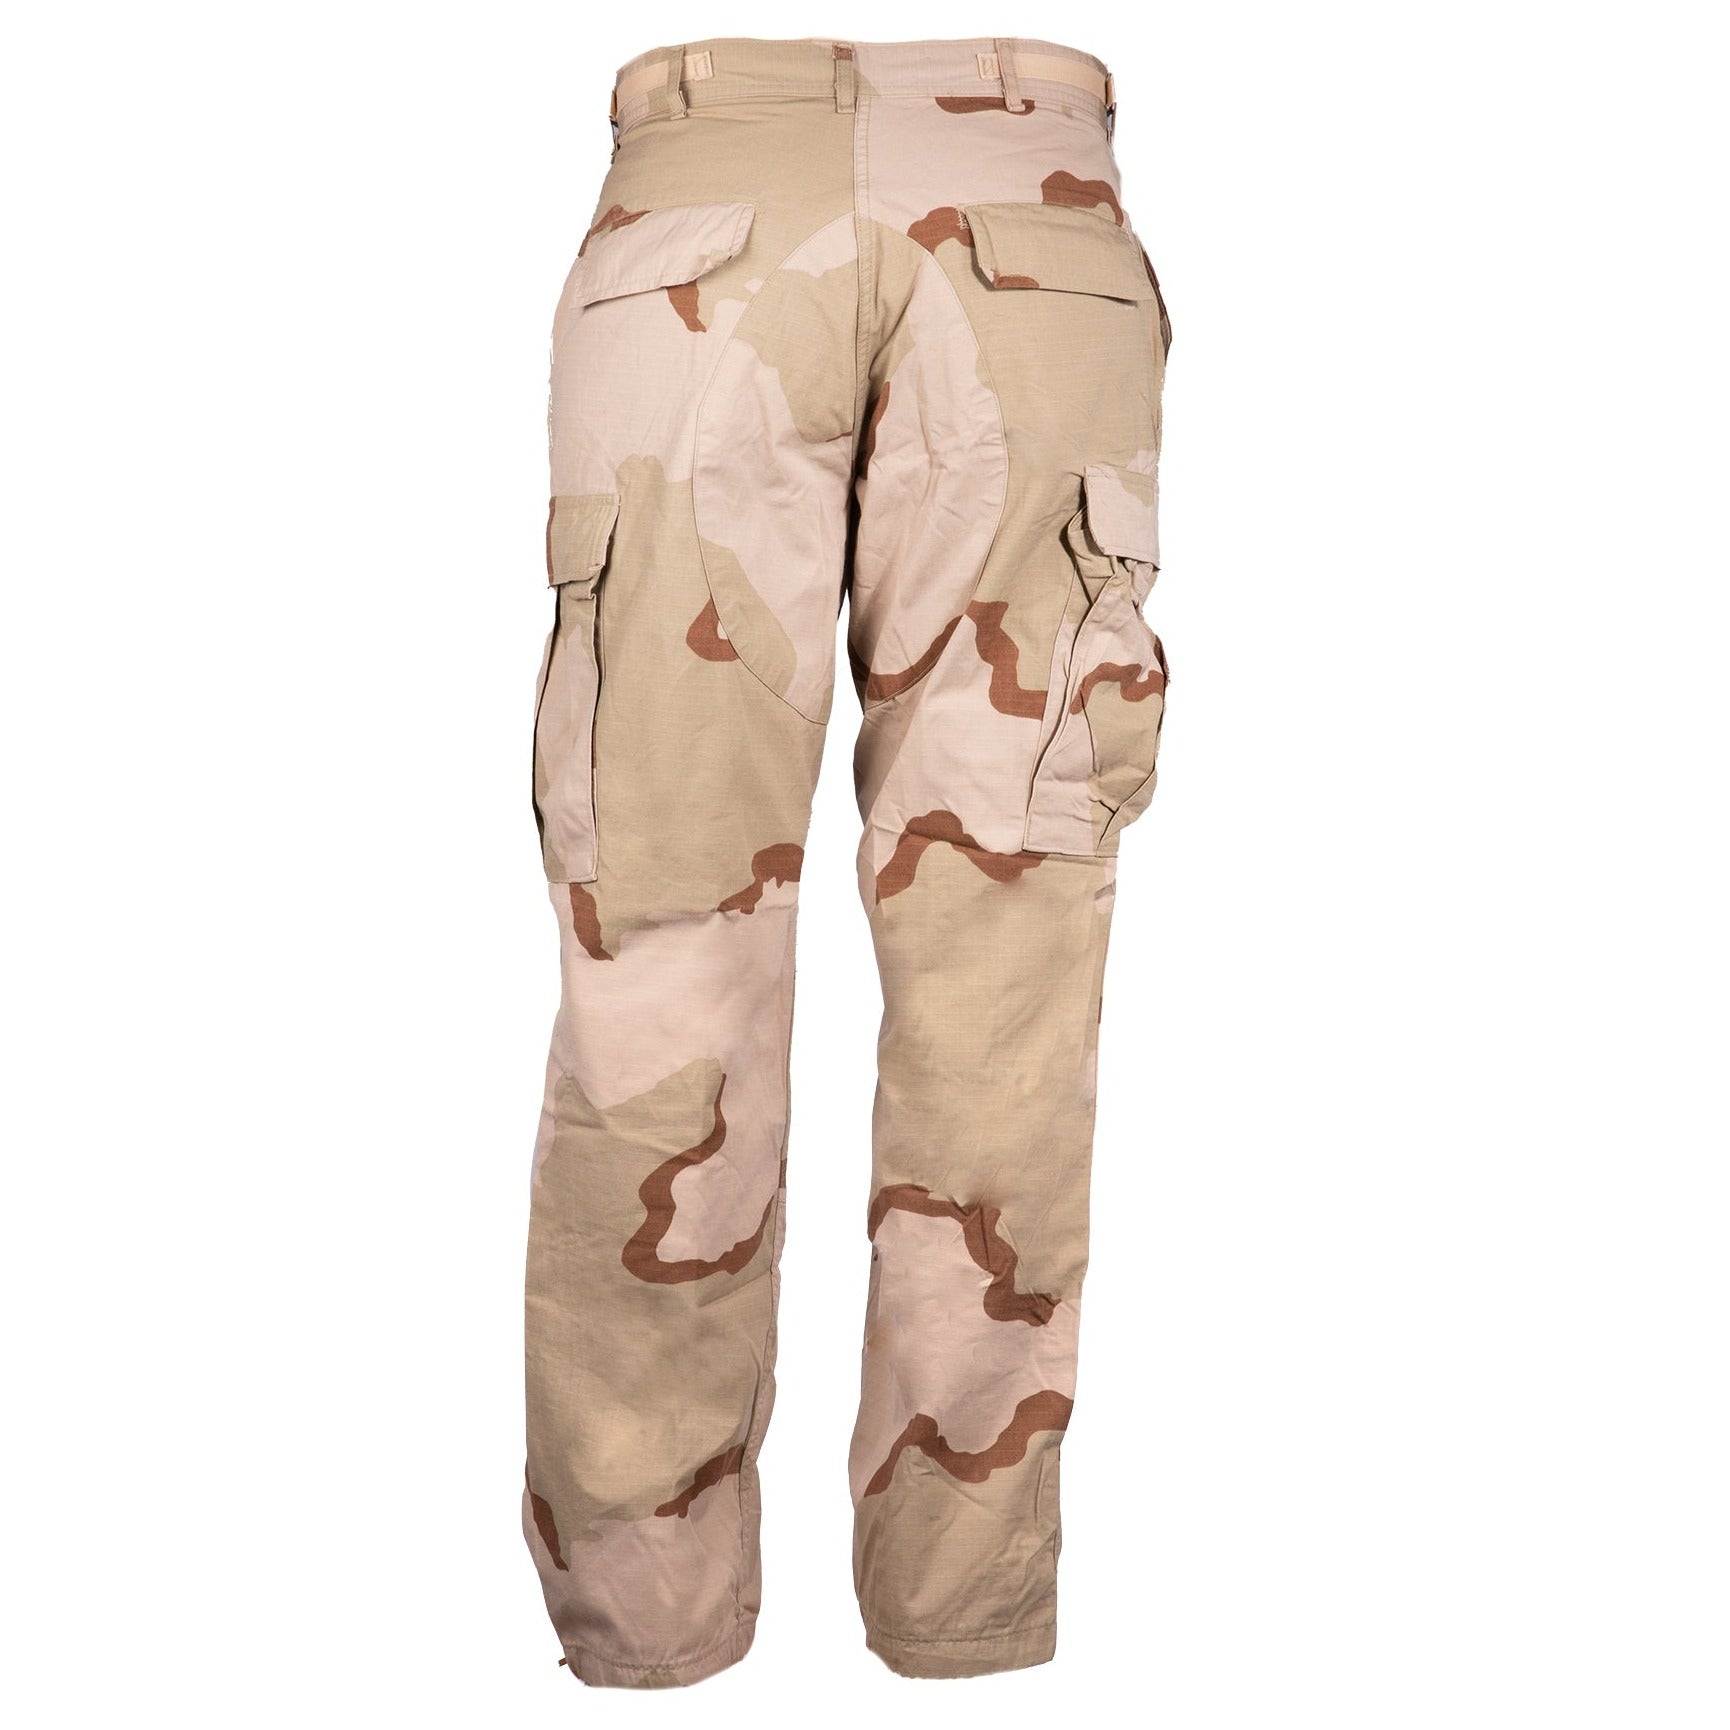 AS-IS Military DCU Tri-Color Desert Camo Trousers Combat Uniform Pants ...